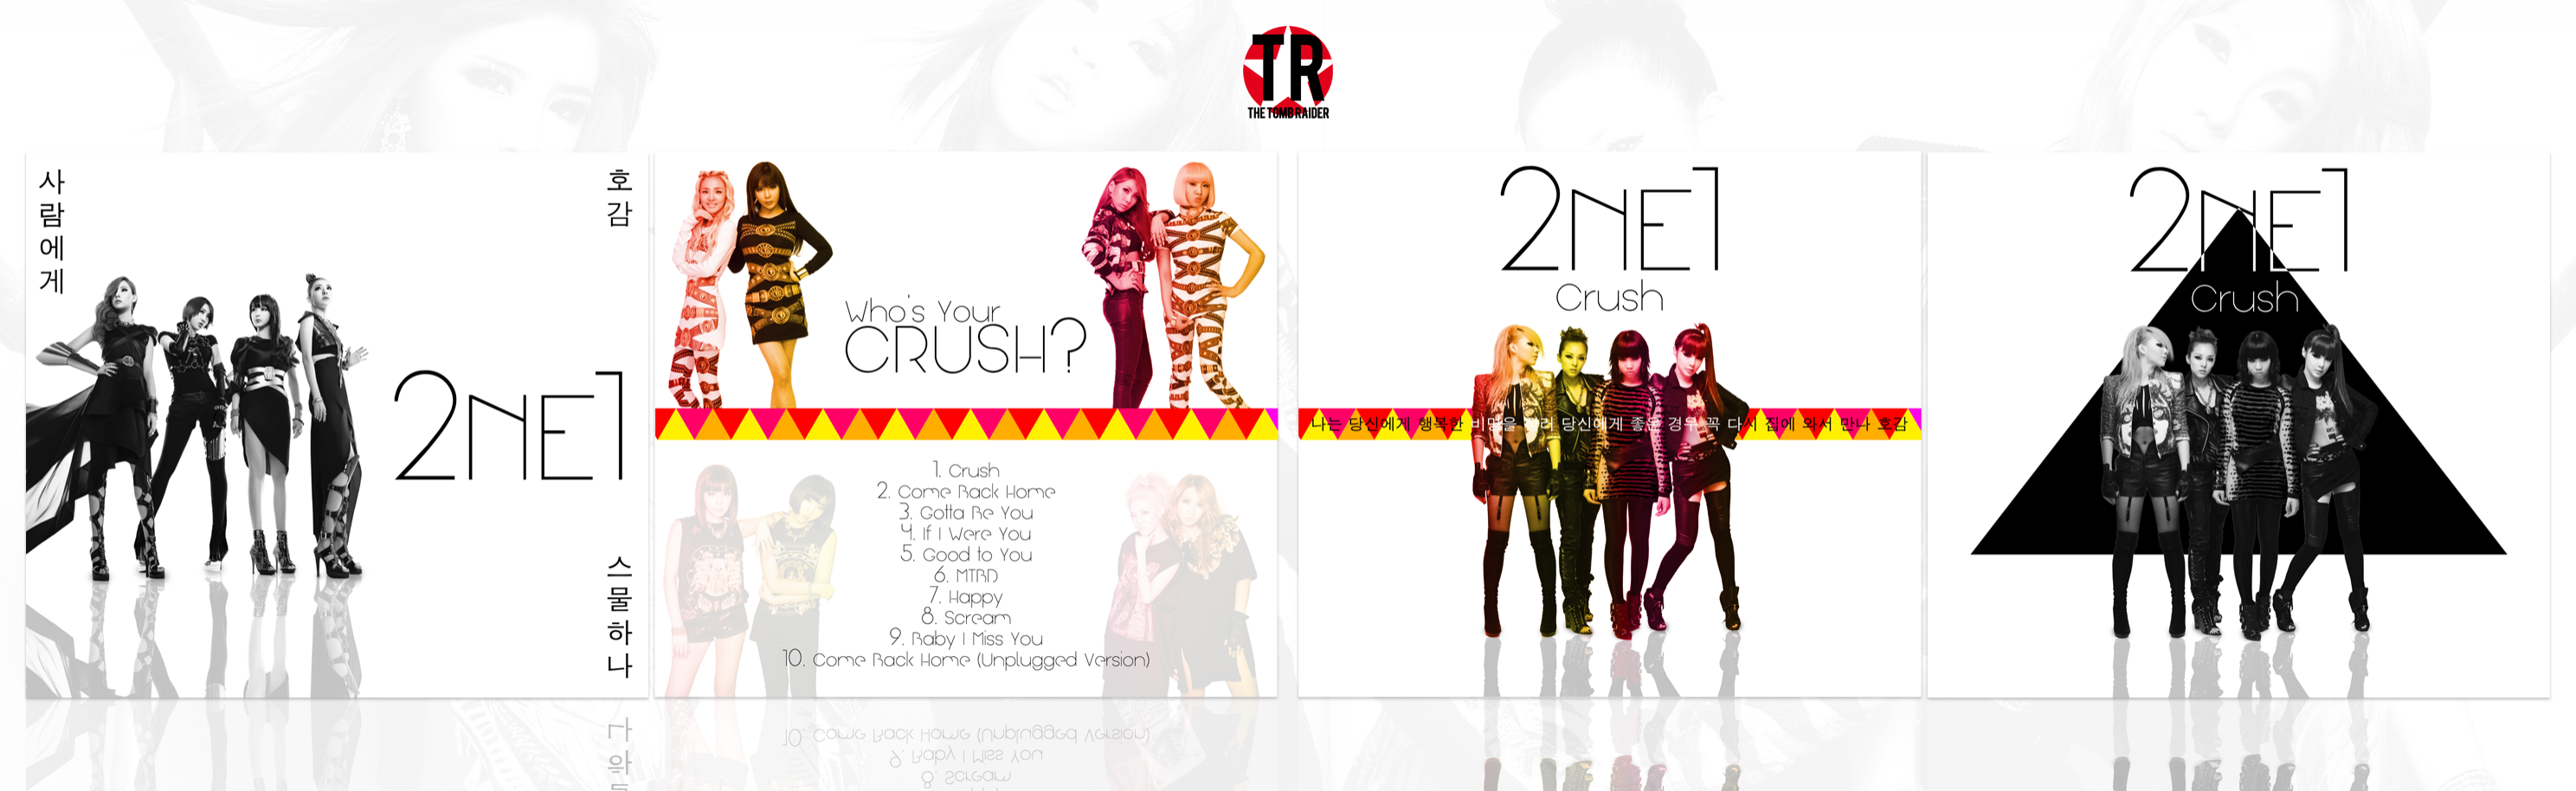 2NE1 - Crush box cover